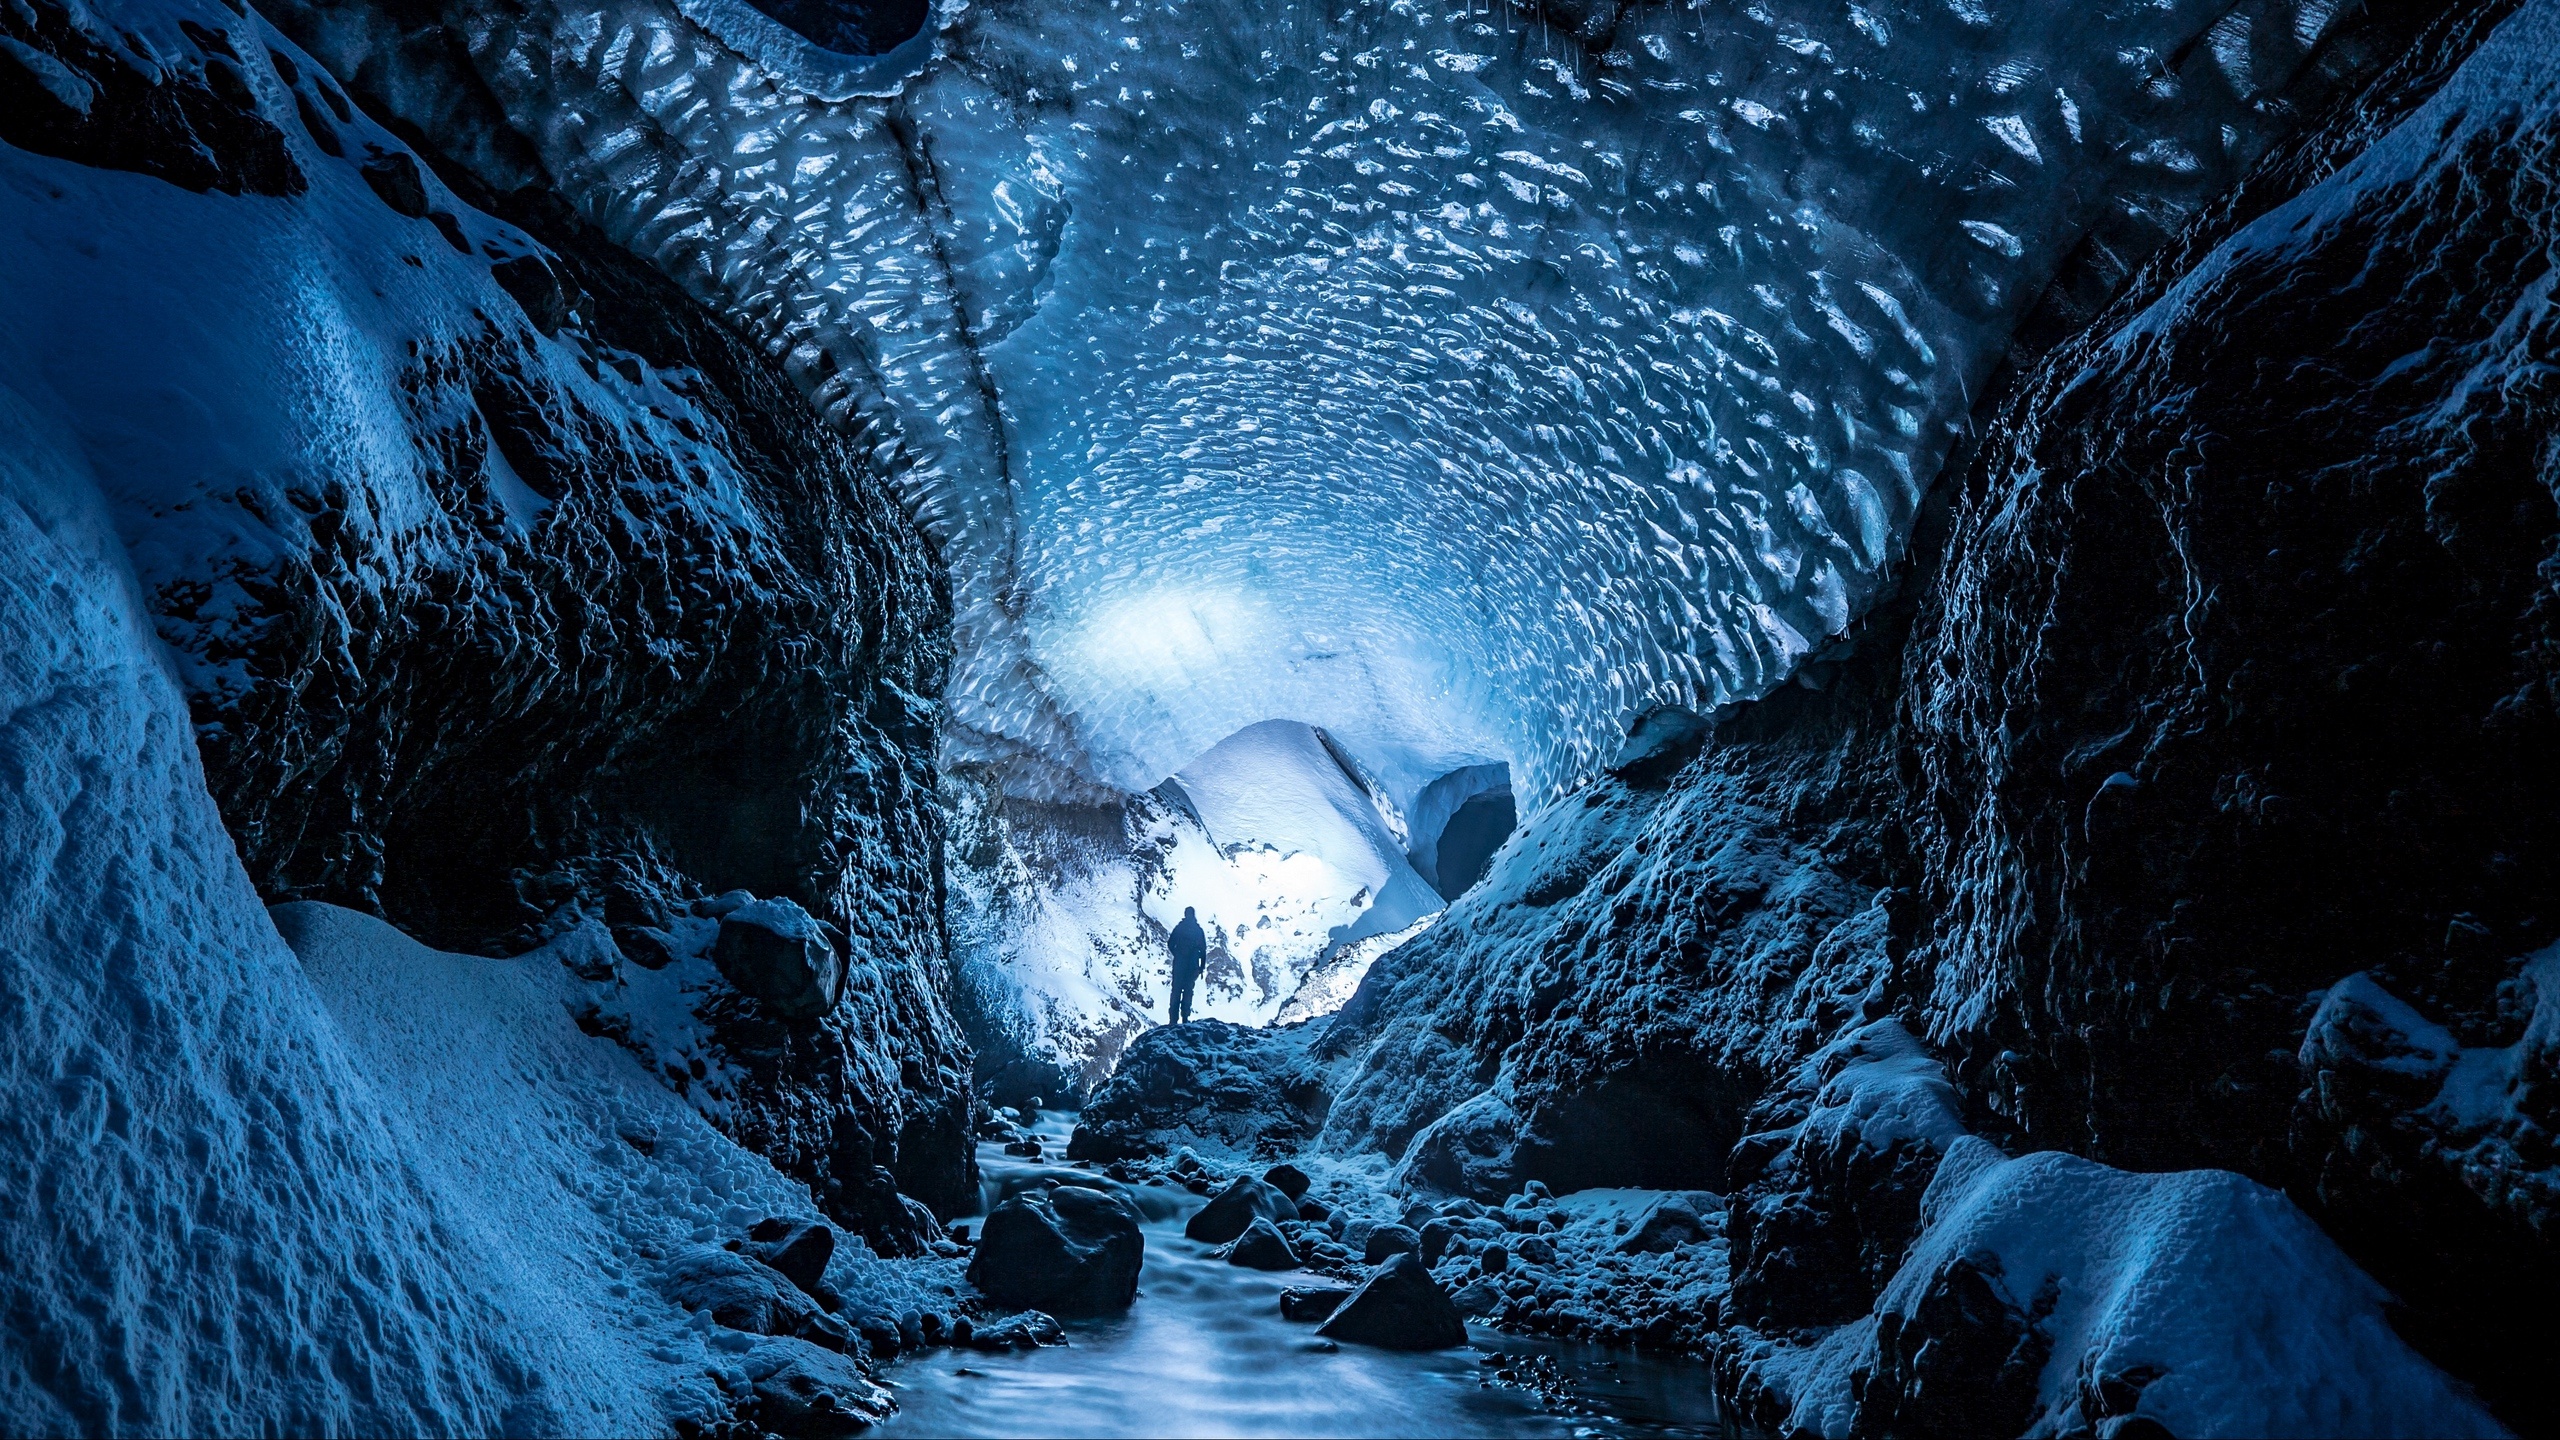 HD wallpaper, 2560X1440 Hd Desktop, Desktop Hd Ice Cave Wallpaper, Breathtaking Ice Caves